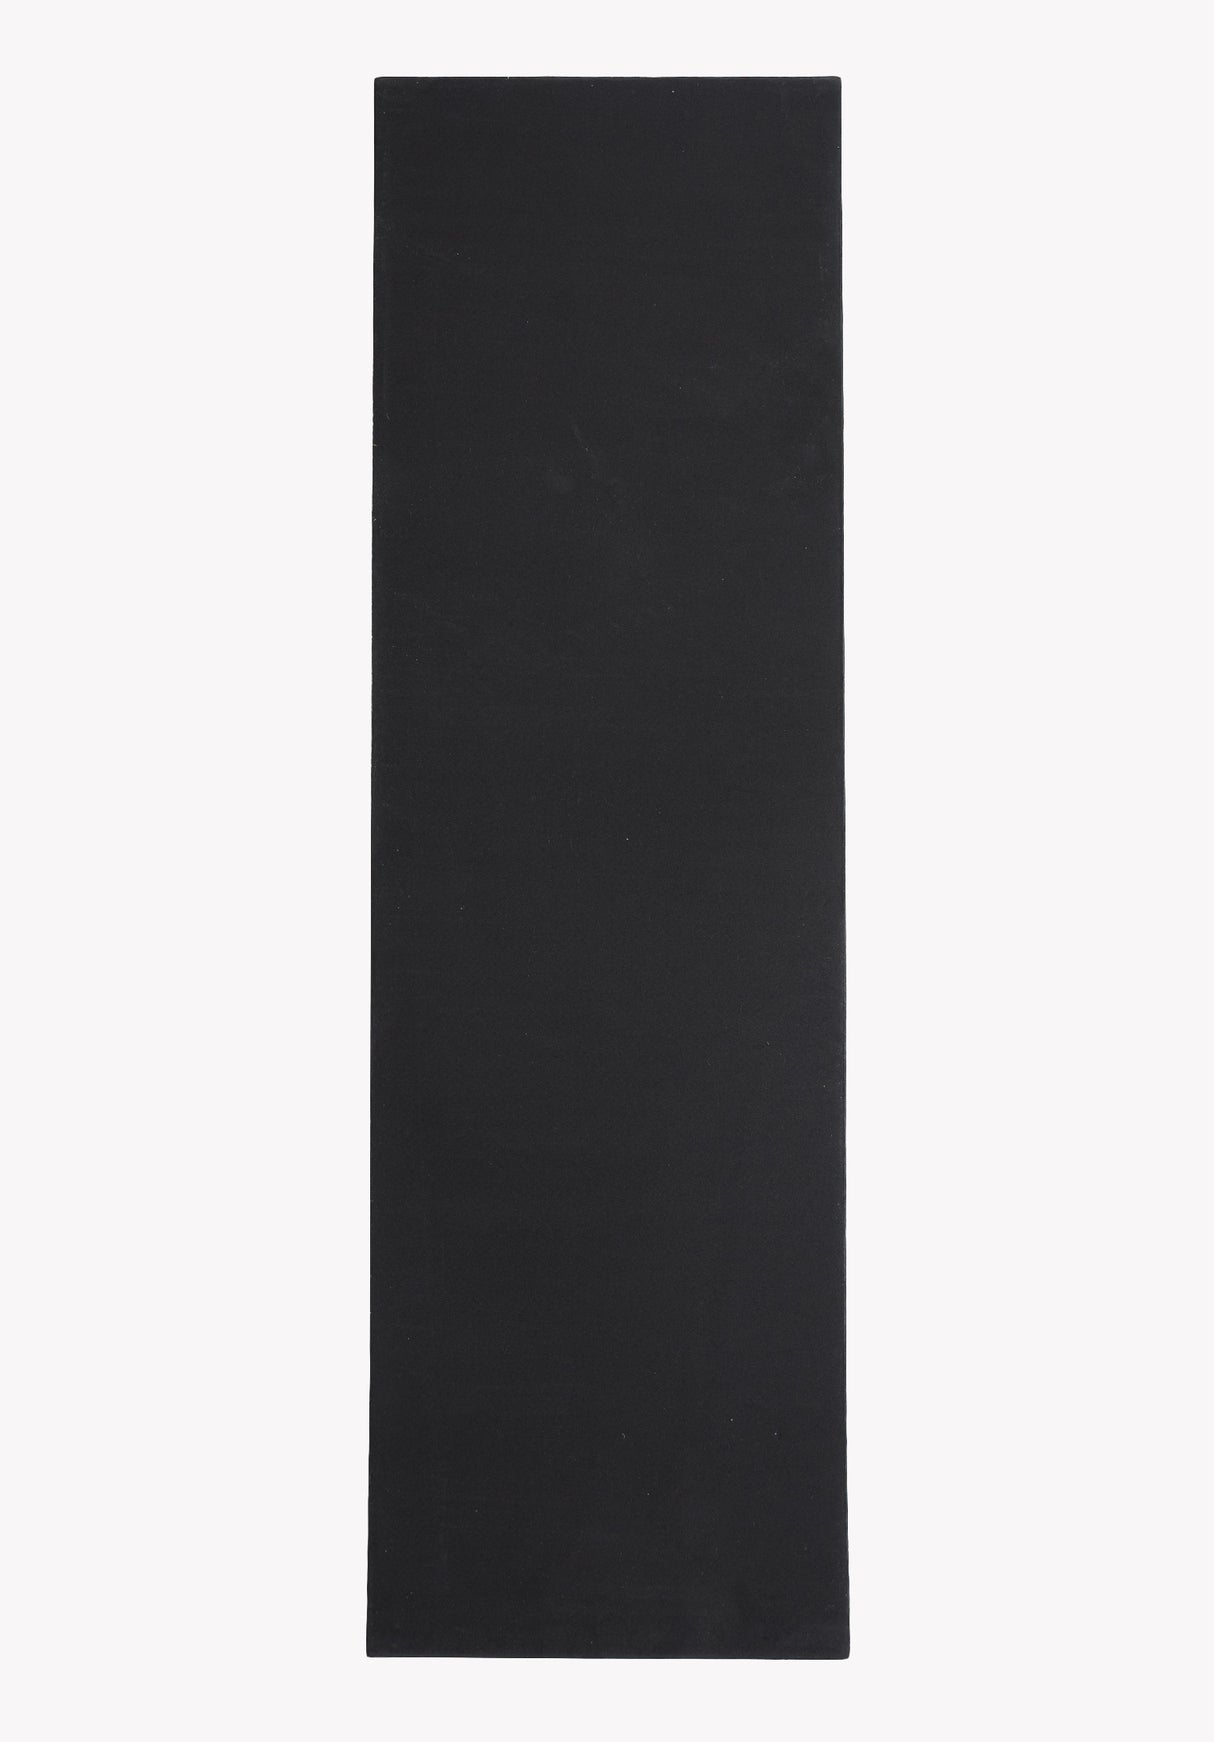 Foam 30"x9" black Vorderansicht